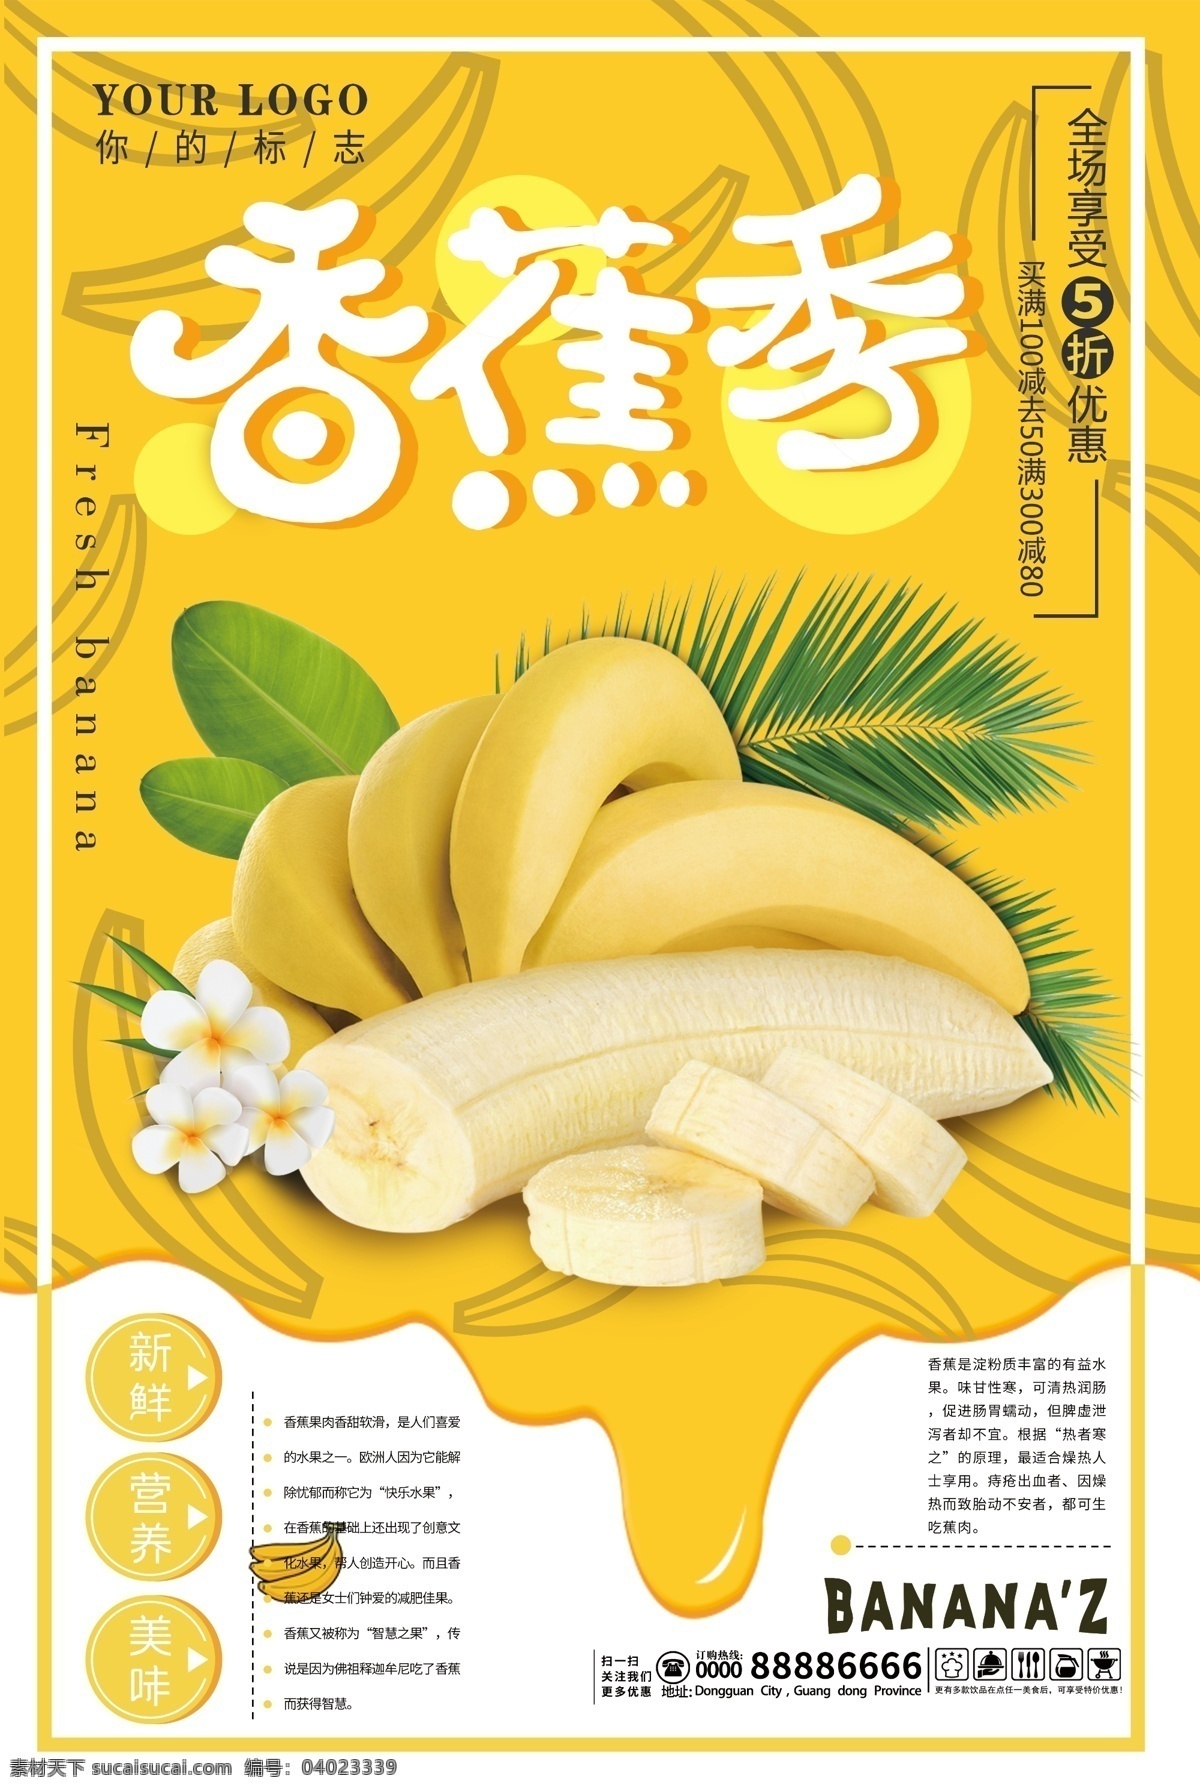 香蕉 香蕉海报 香蕉展架 新鲜香蕉 香蕉包装 香蕉广告 香蕉种植 香蕉基地 香蕉批发 水果海报